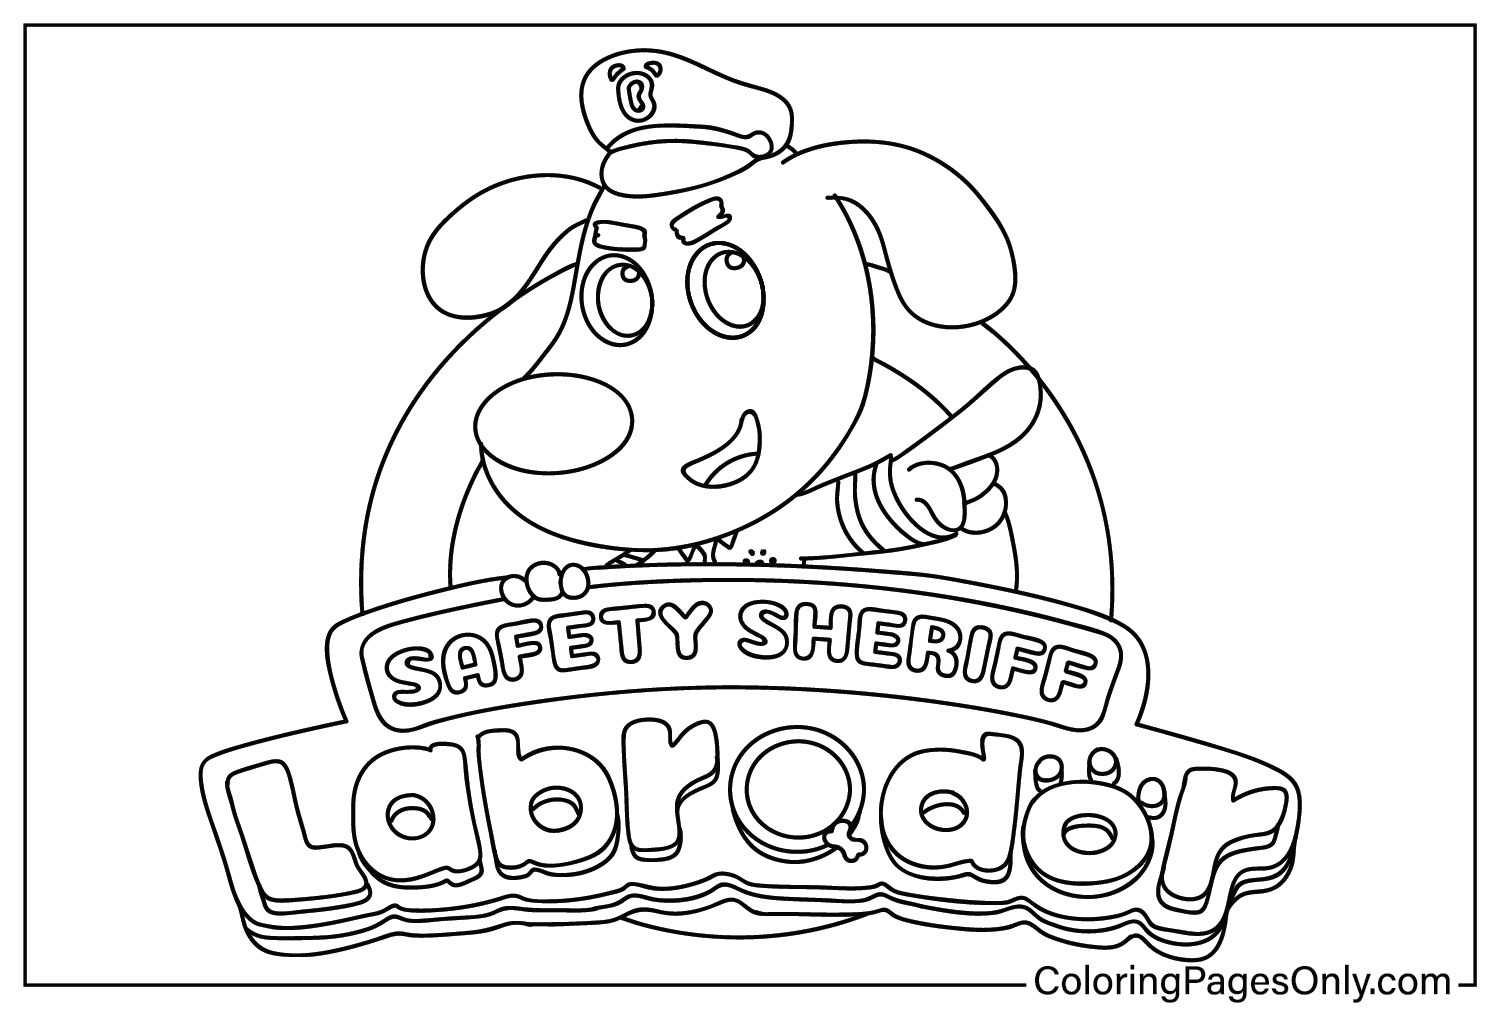 Images du shérif de la sécurité du Labrador à colorier du shérif de la sécurité du Labrador